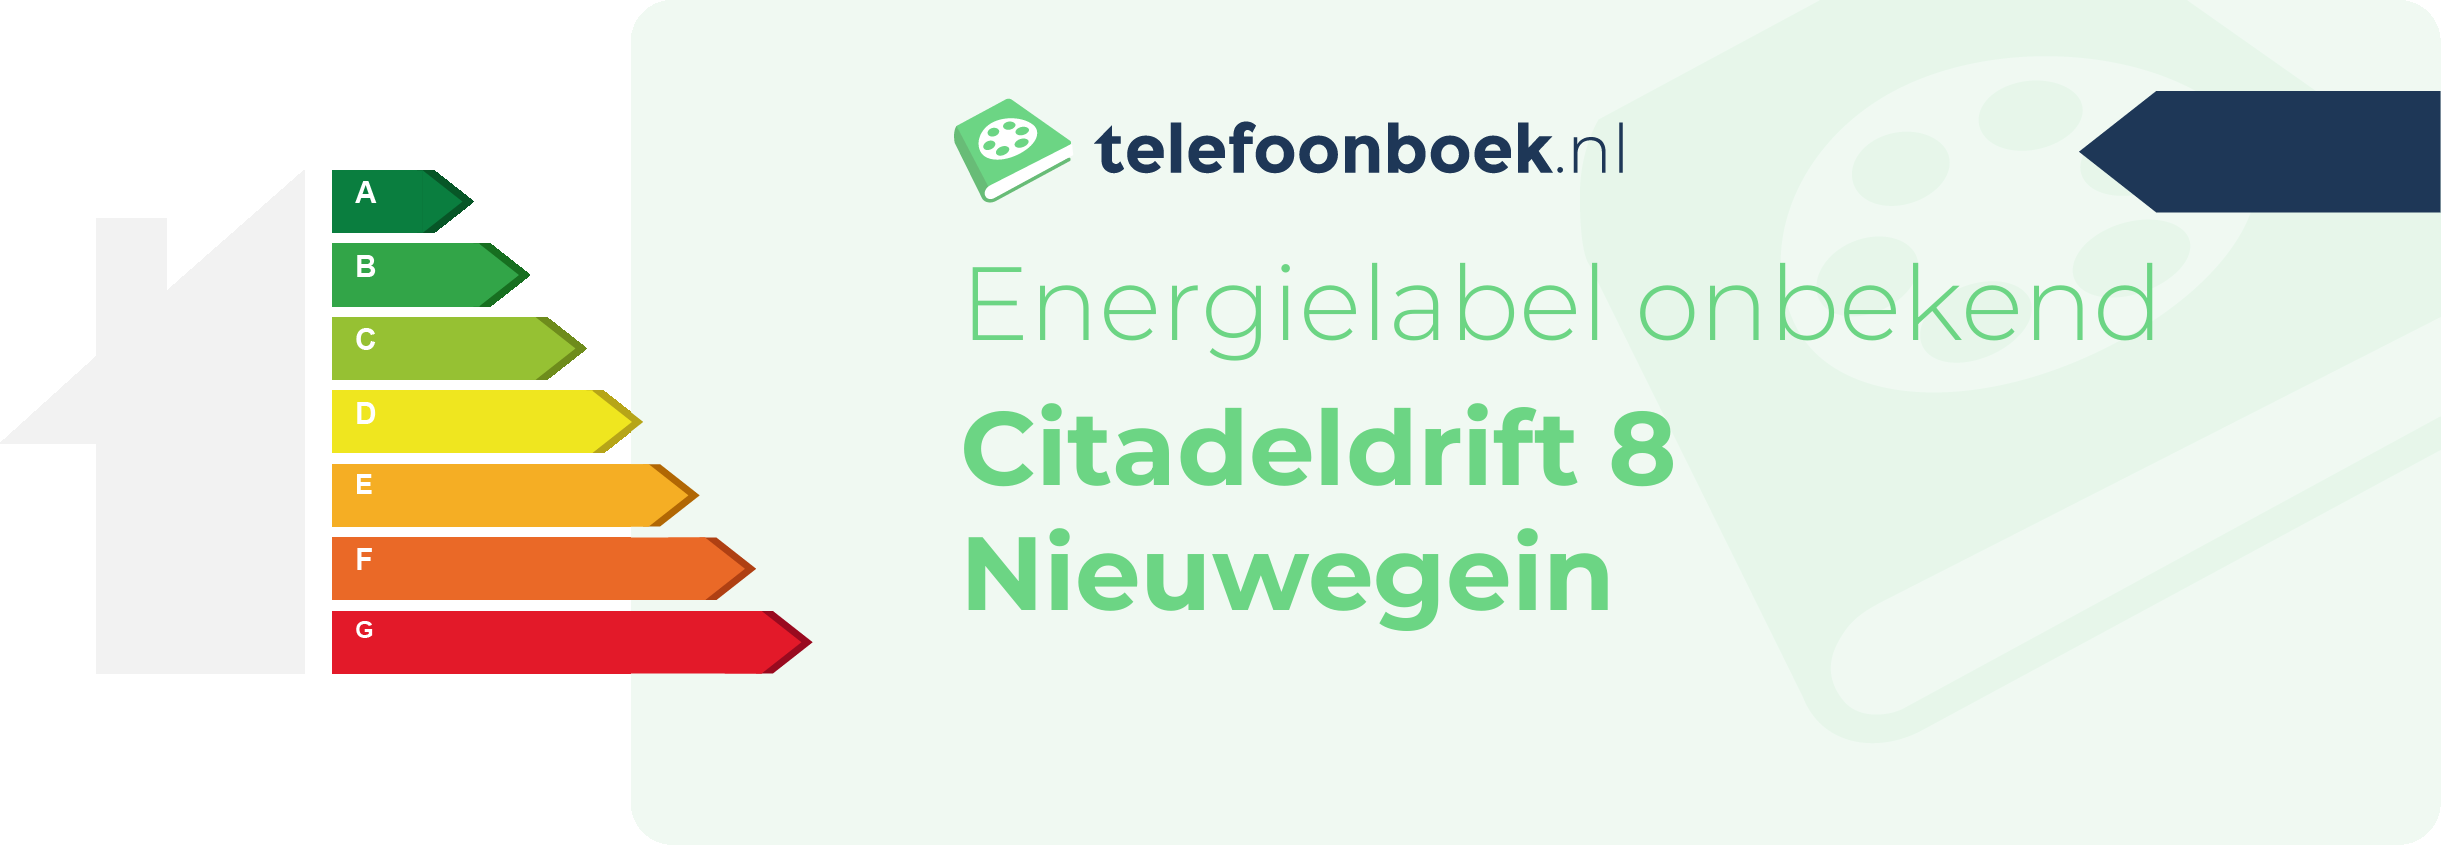 Energielabel Citadeldrift 8 Nieuwegein